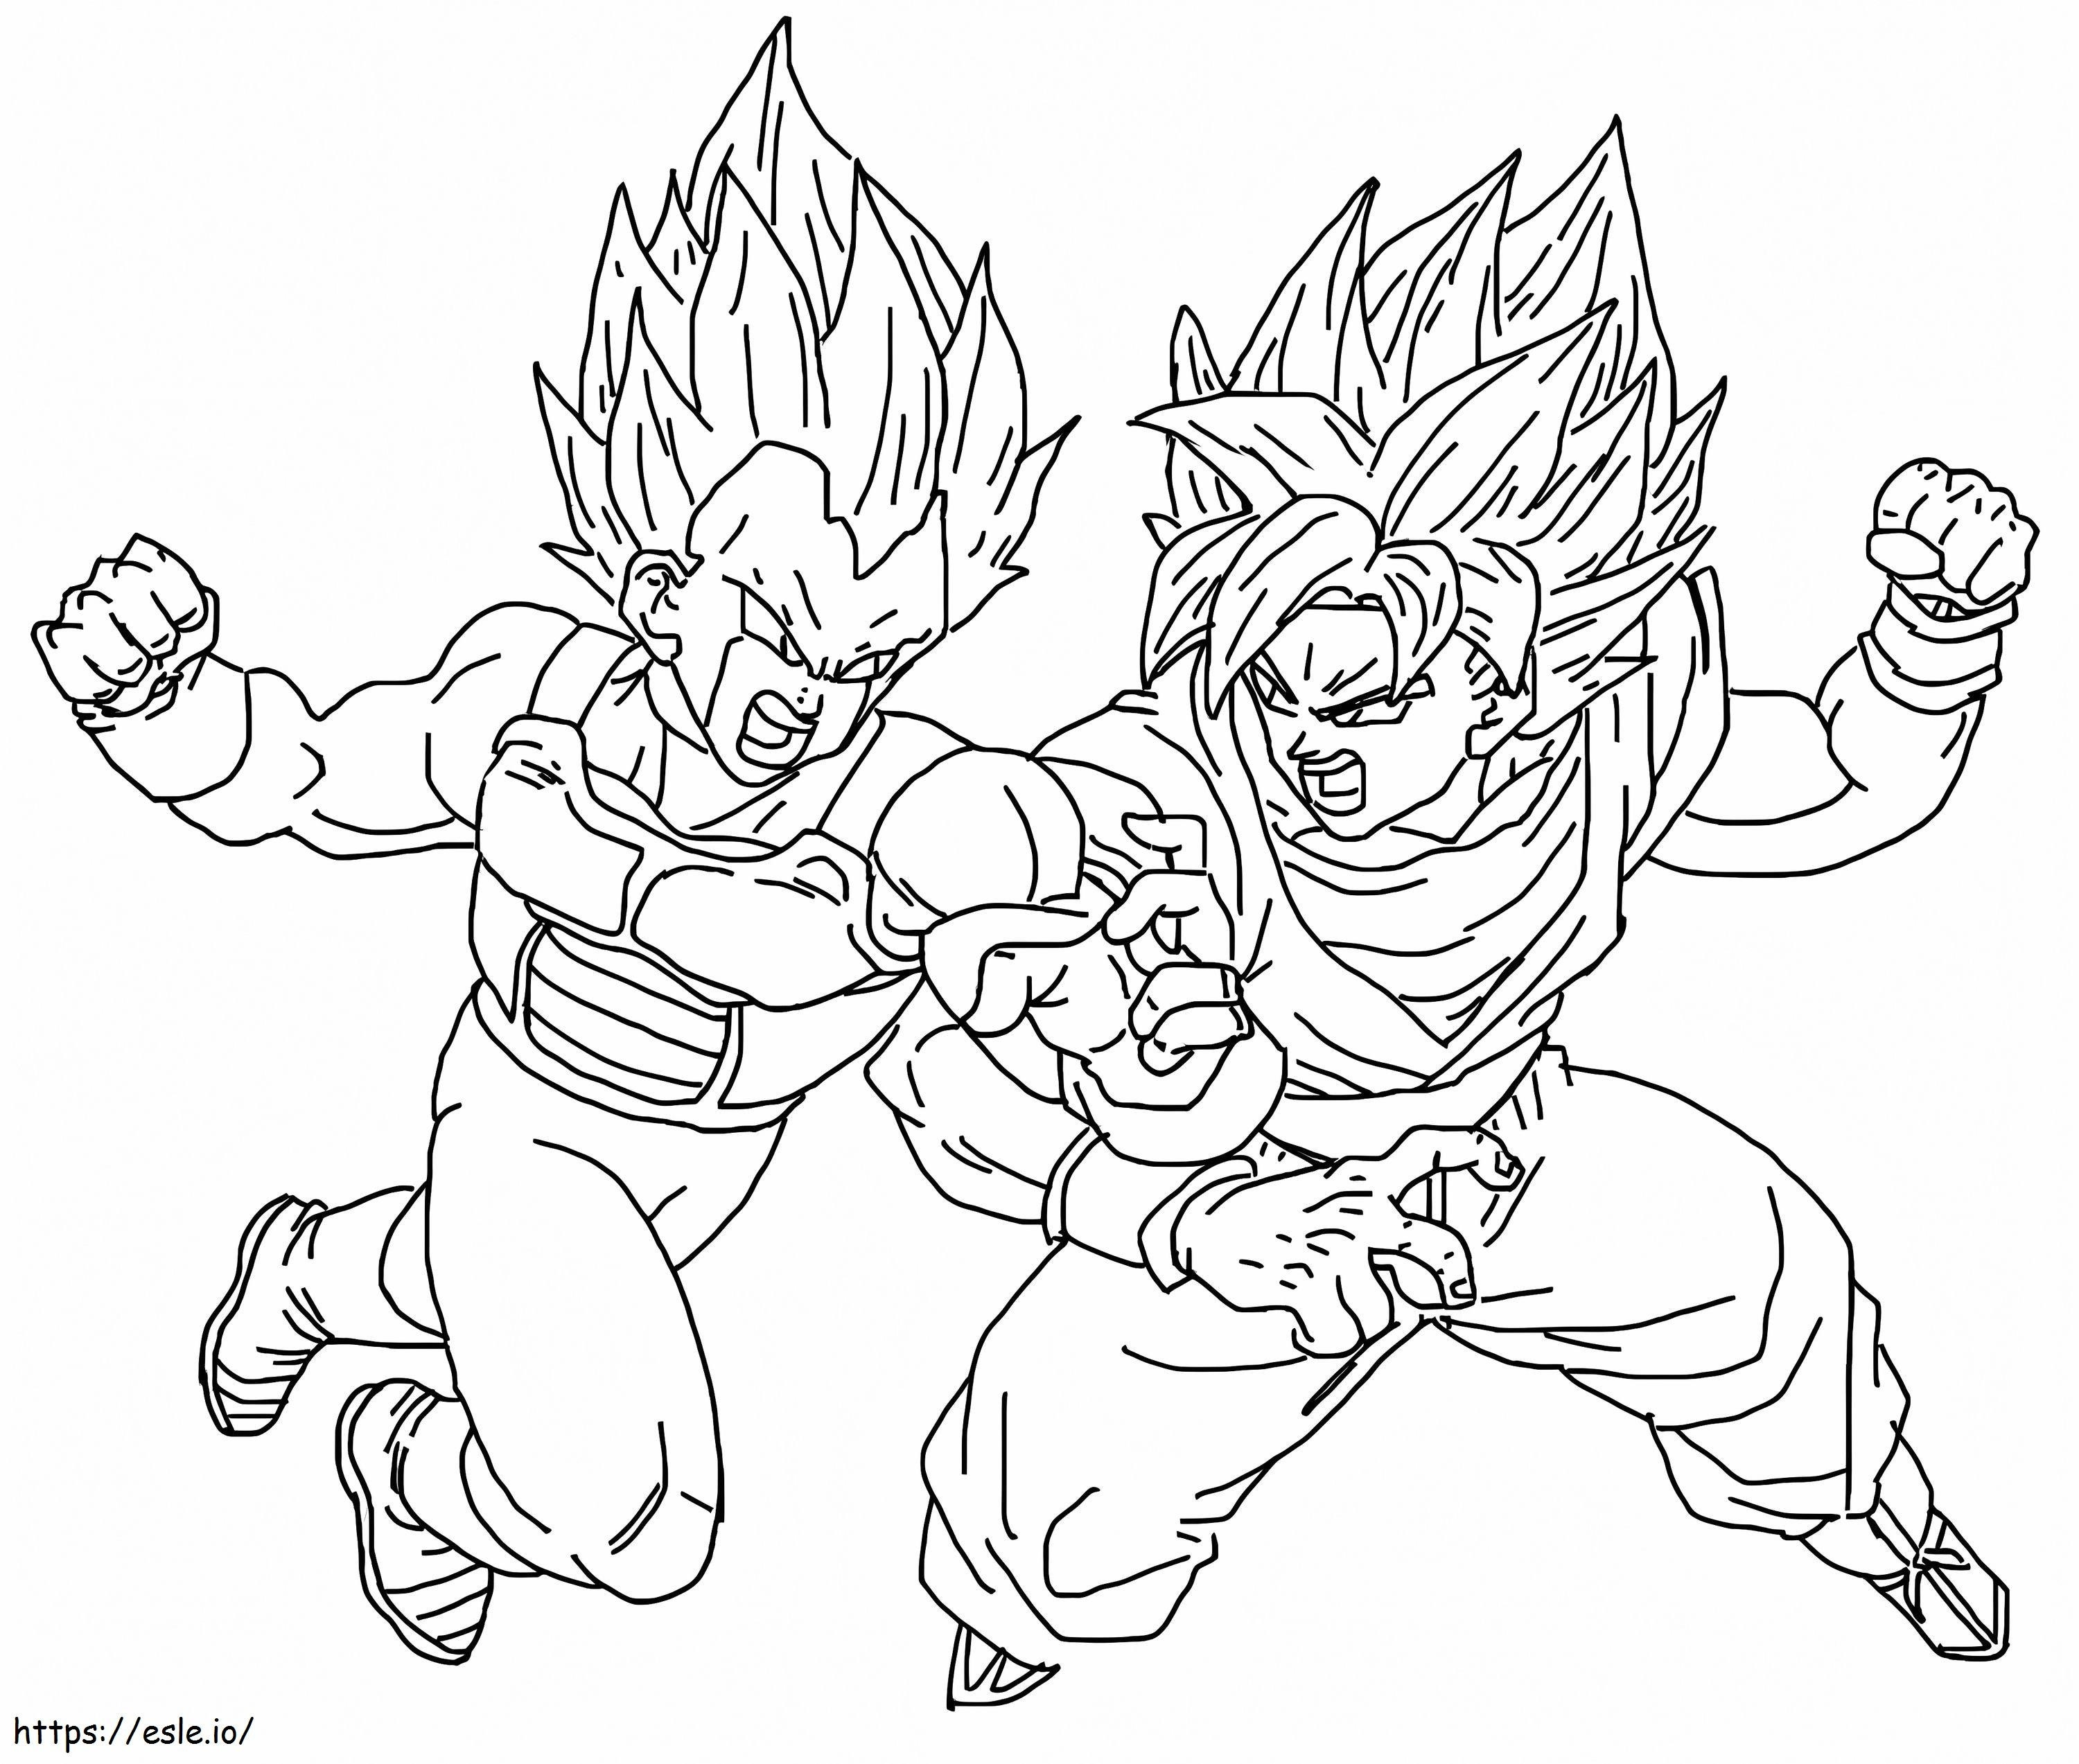 Vegeta und Goku ausmalbilder